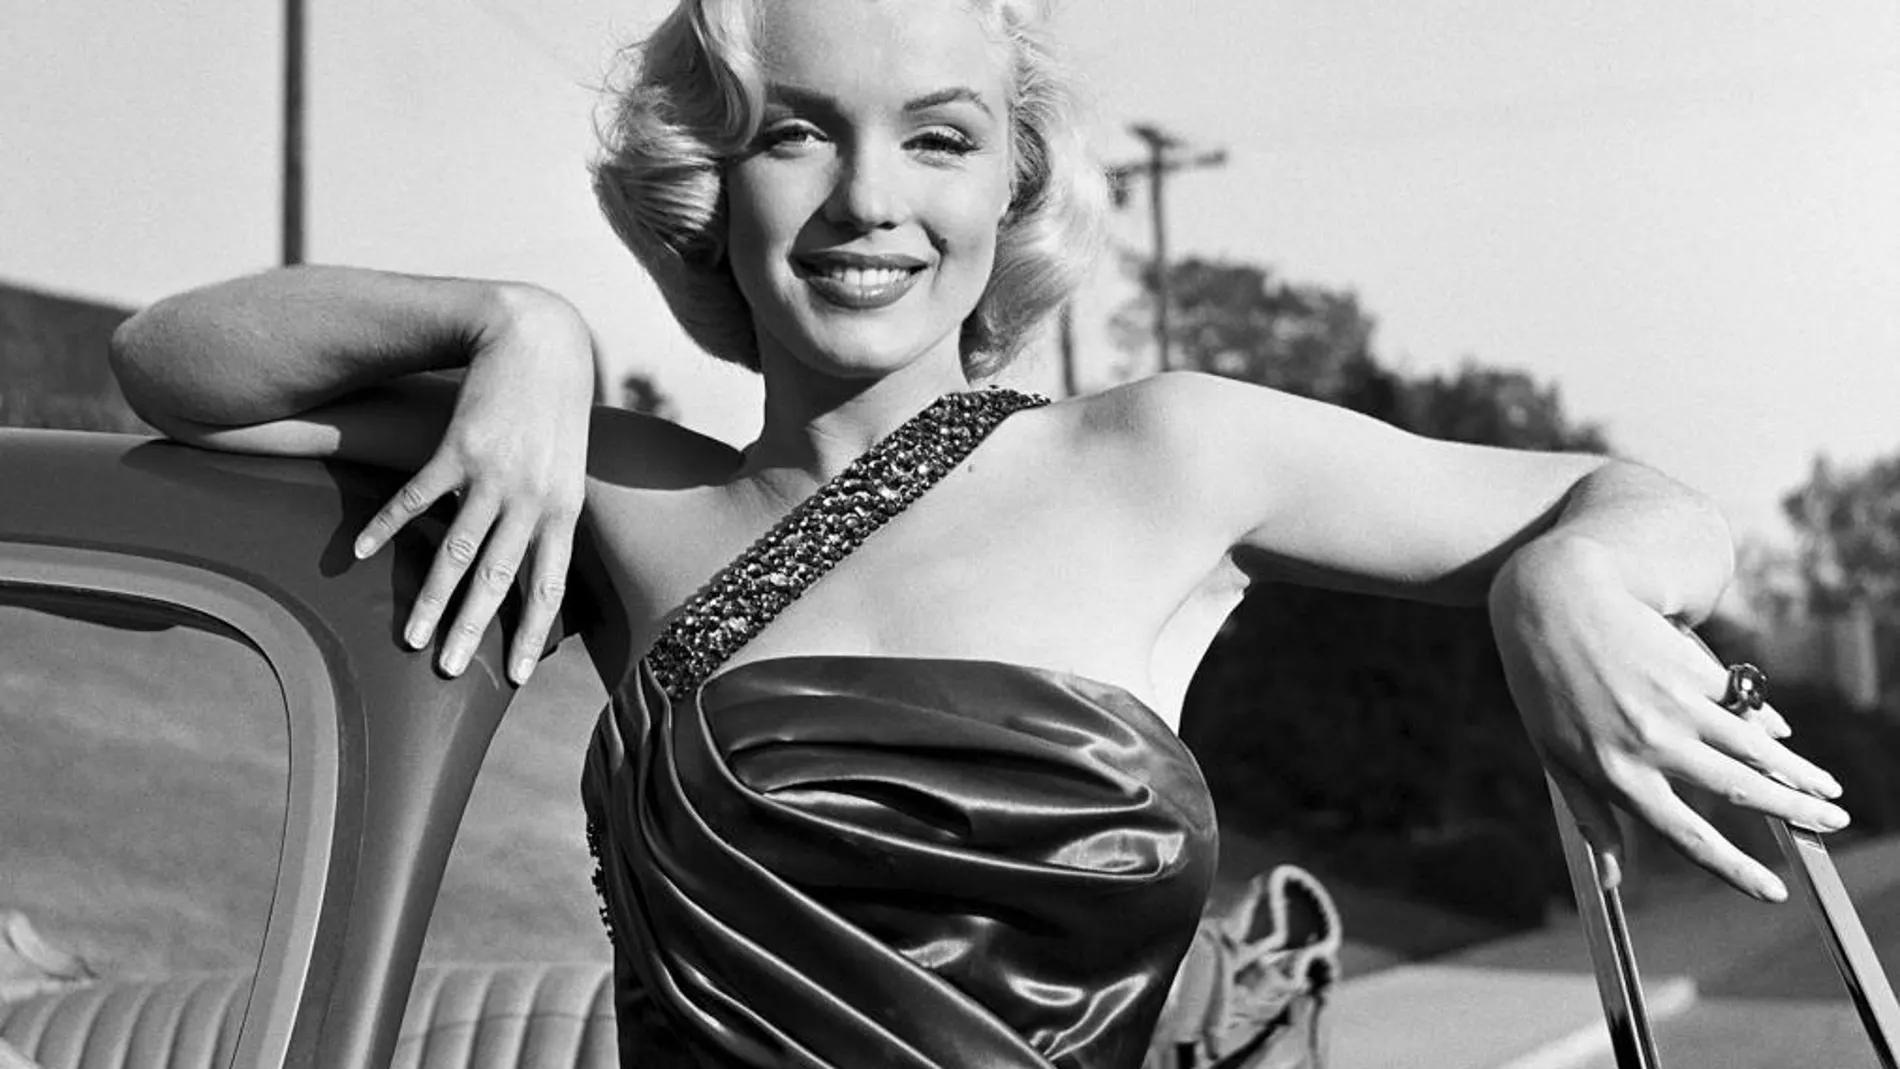 Fotografía de la actriz Marilyn Monroe, del fotógrafo Frank Worth que forma parte de la exposición de Worth, fotógrafo de la intimidad de las estrellas de Hollywood entre las décadas de los años 40 y 60